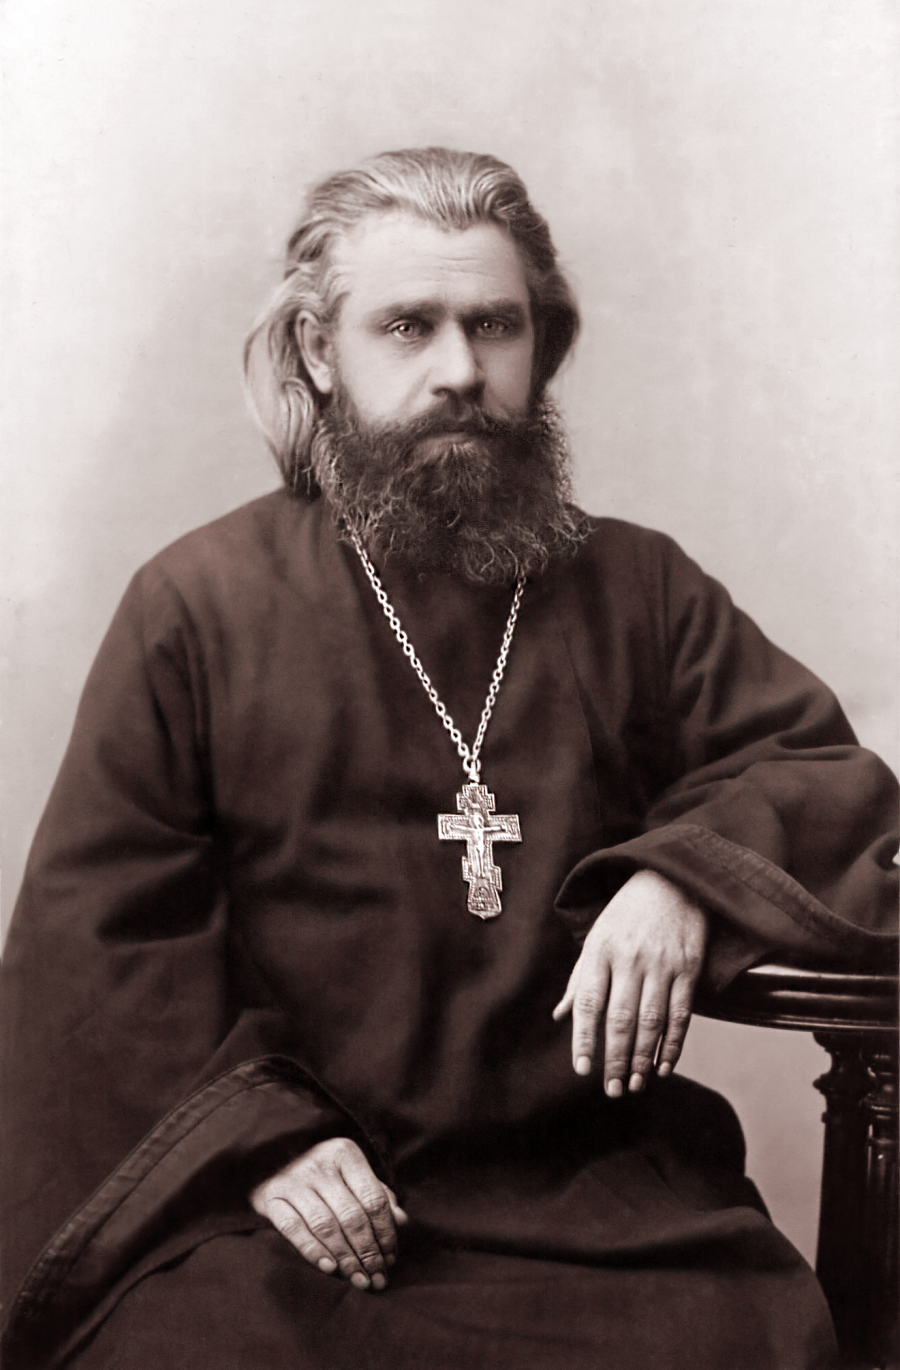 Елатьма - Бильдинский Сергей Федорович, священник елатомской Введенской церкви